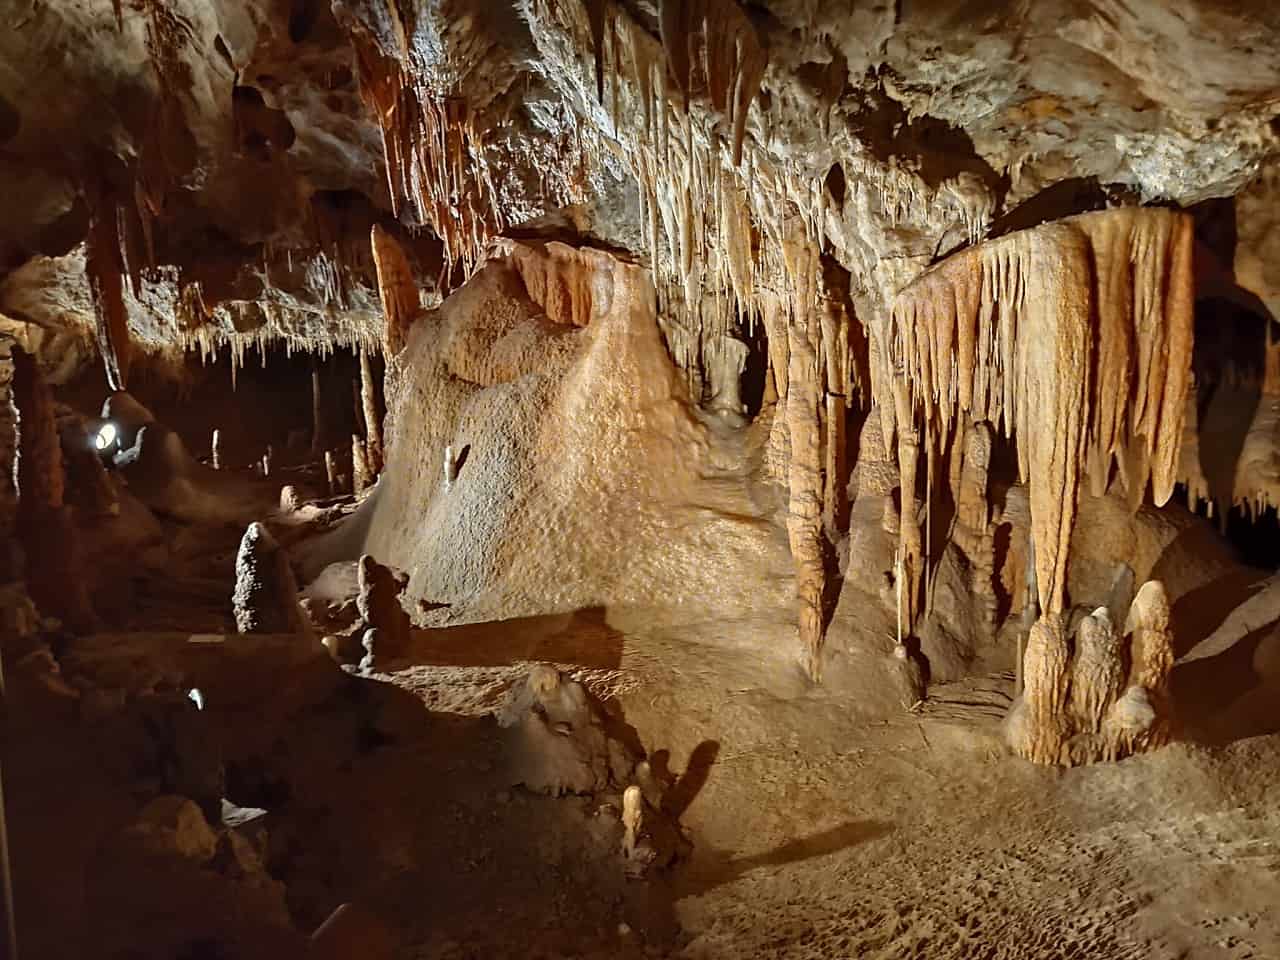 Kartchner Caverns State Park, Benson